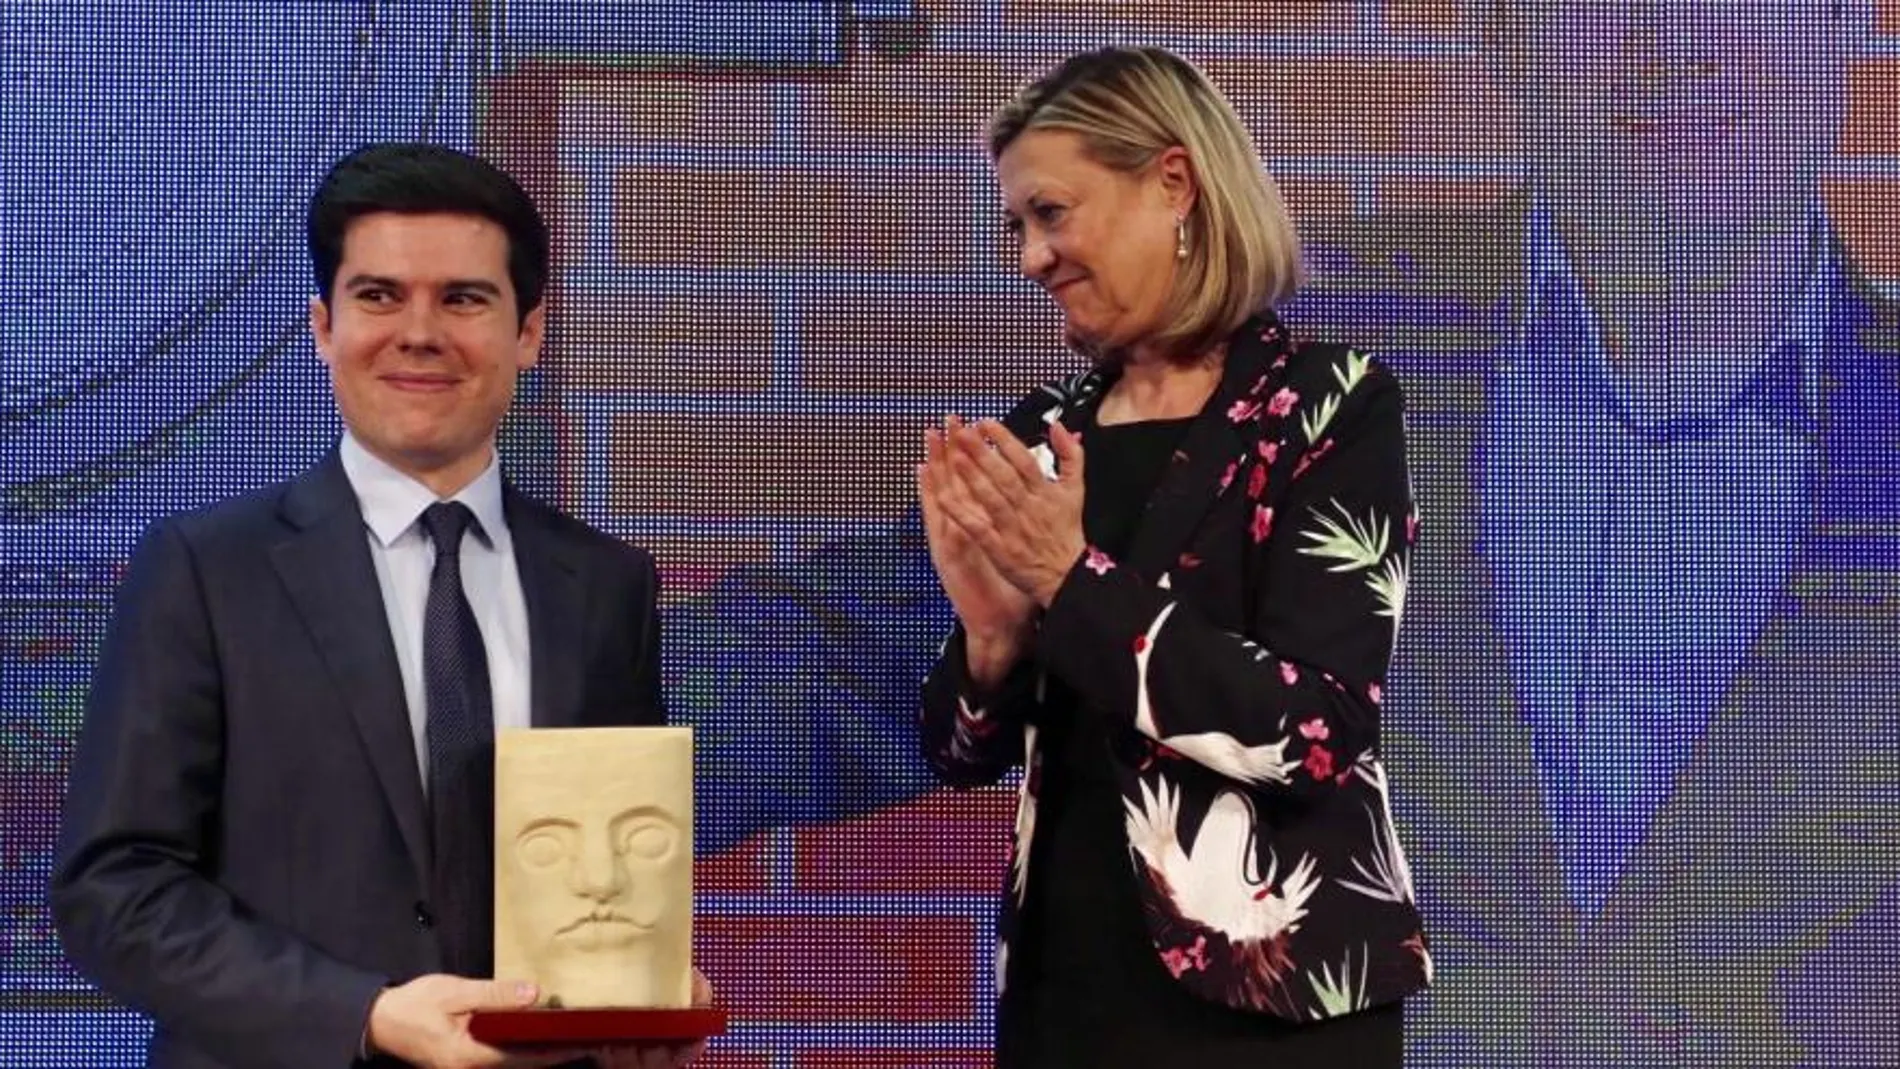 La consejera de Economía y Hacienda, Pilar del Olmo, entrega el premio a Alexandre Pérez en los Premios de Innovadores de Castilla y León de El Mundo-Diario de Castilla y León